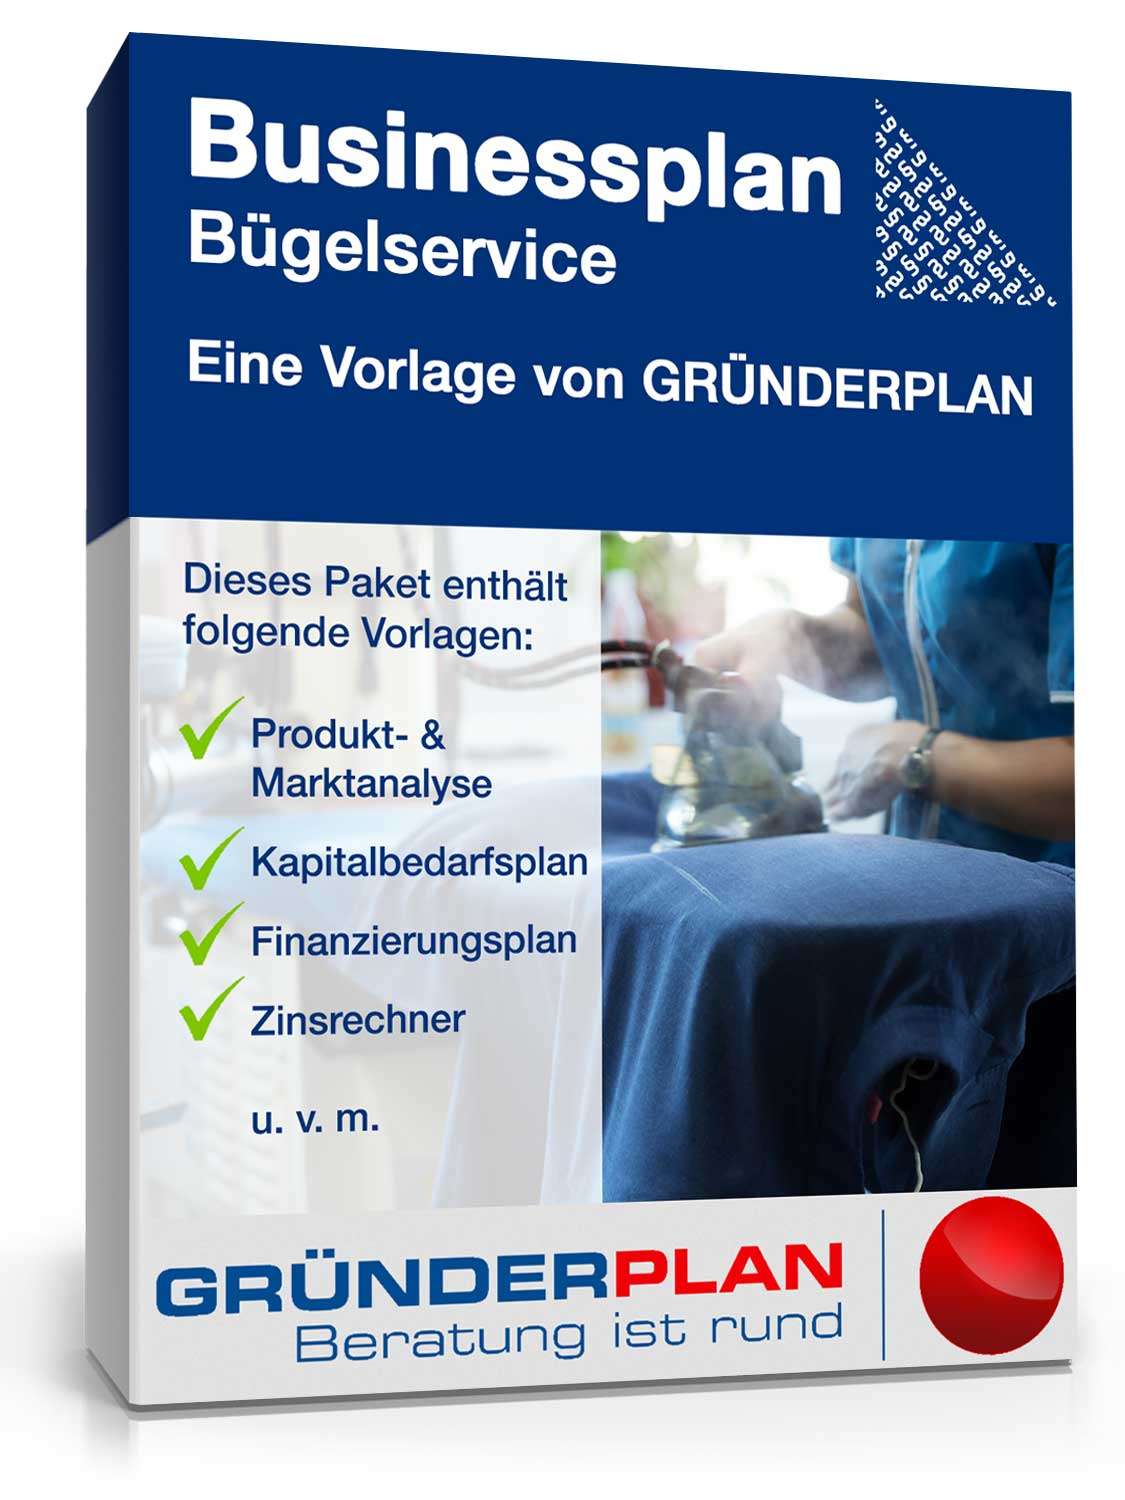 Hauptbild des Produkts: Businessplan Bügelservice von Gründerplan